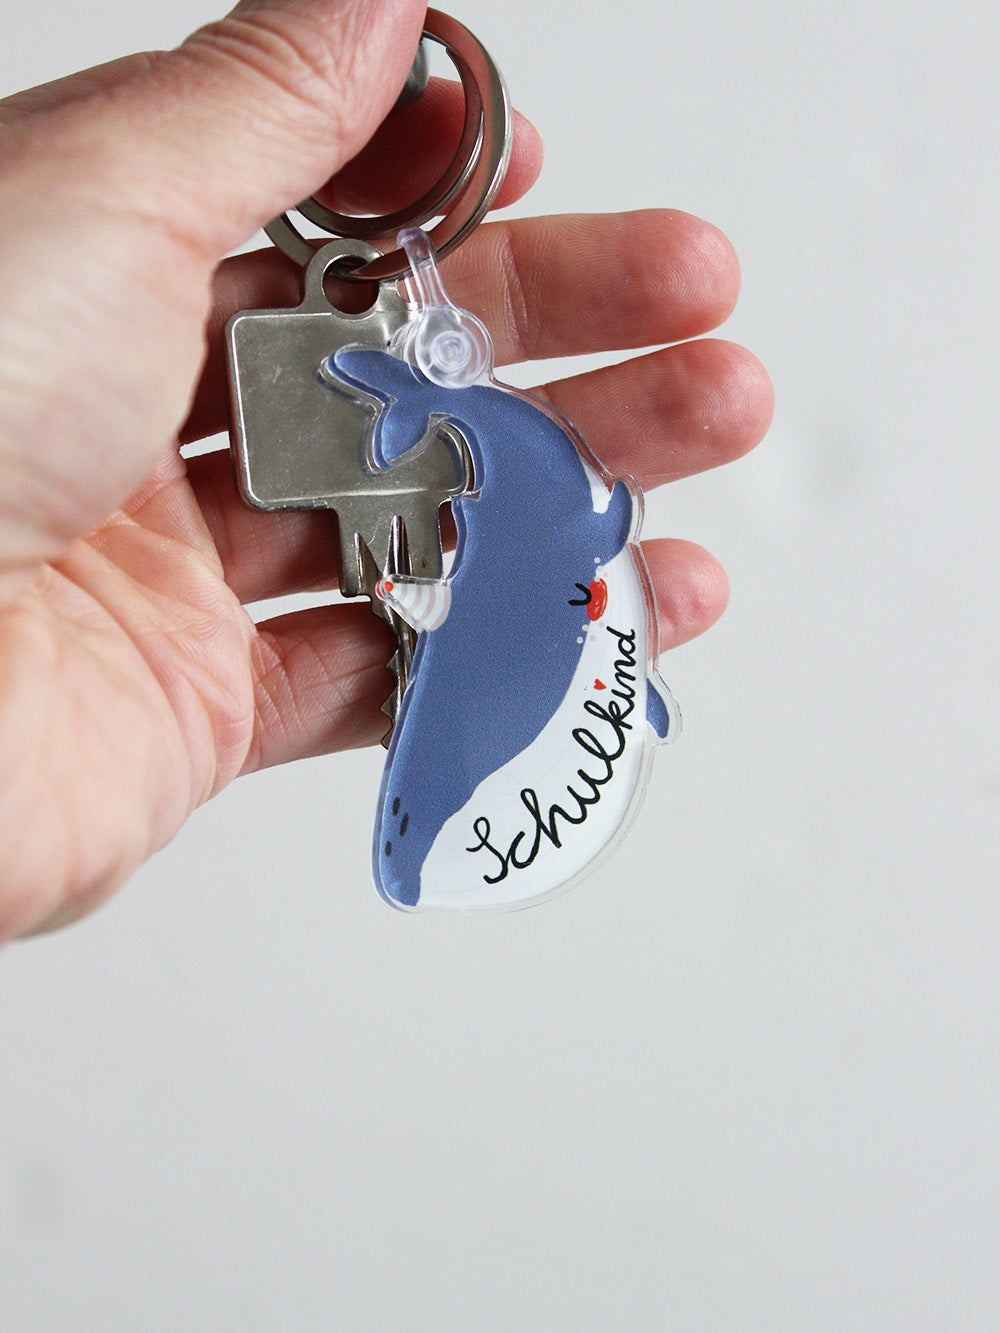 Nahaufnahme eine Schlüssels in Hand liegend mit einem Schlüsselanhänger in Form eines Wals mit Schriftzug Schulkind in den Farben blau und weiß mit Partyhut